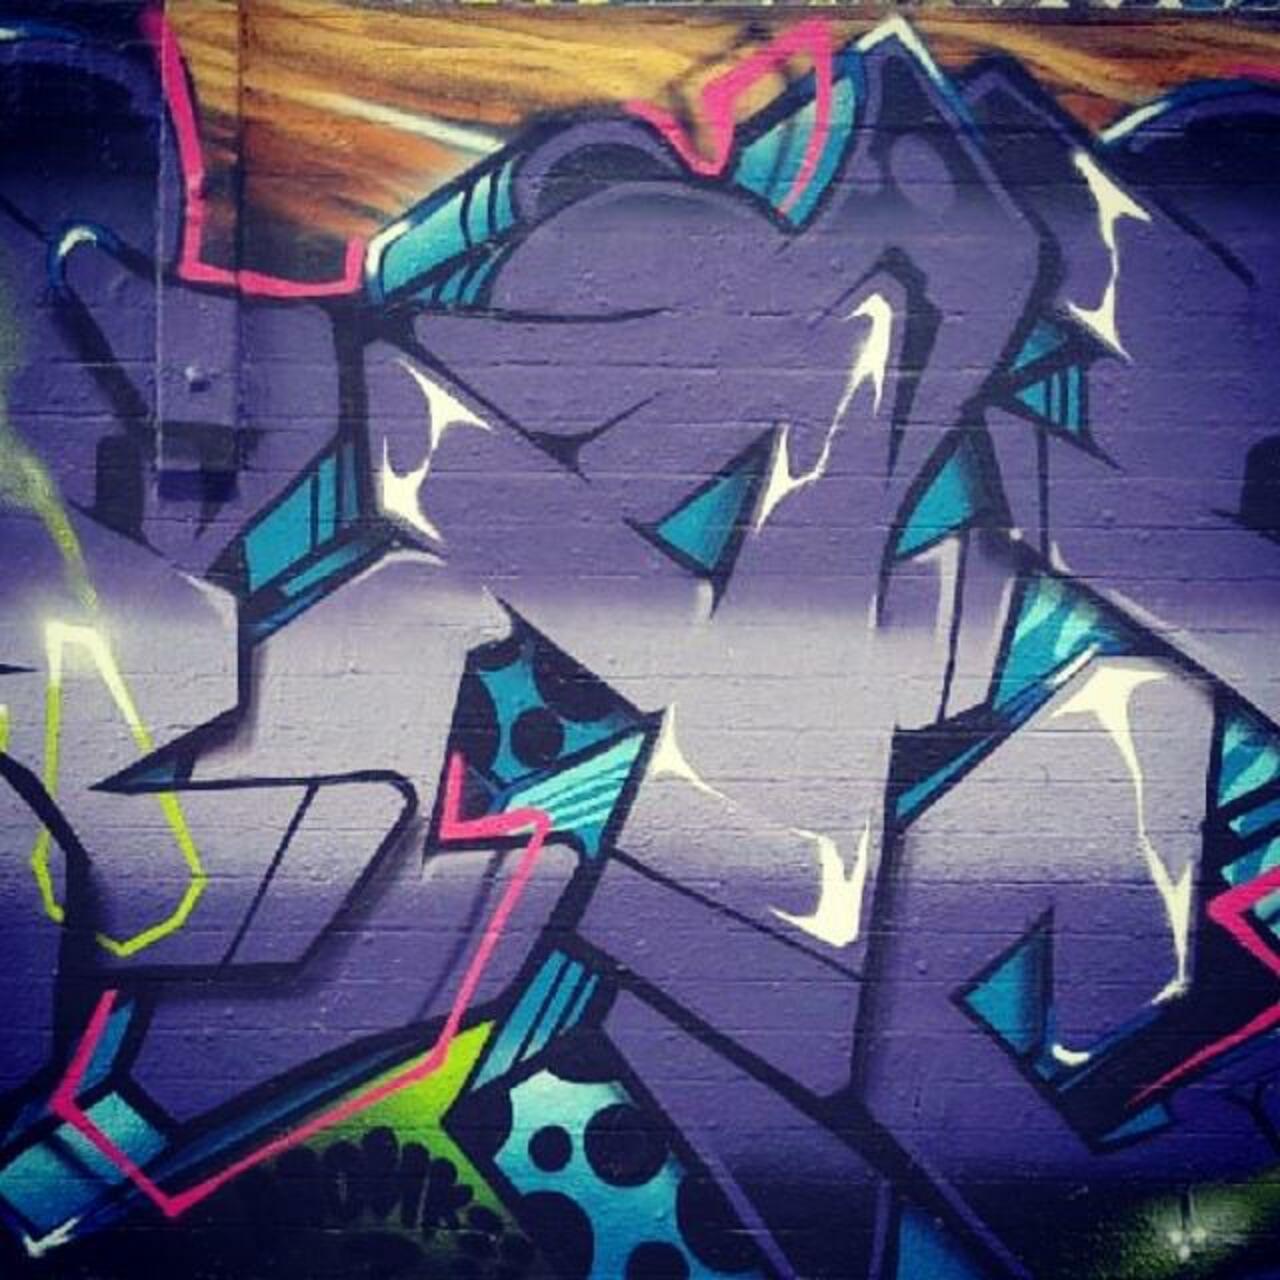 RT @artpushr: via #dease_rock "http://ift.tt/1LMn66i" #graffiti #streetart http://t.co/fhTg8vhhEe